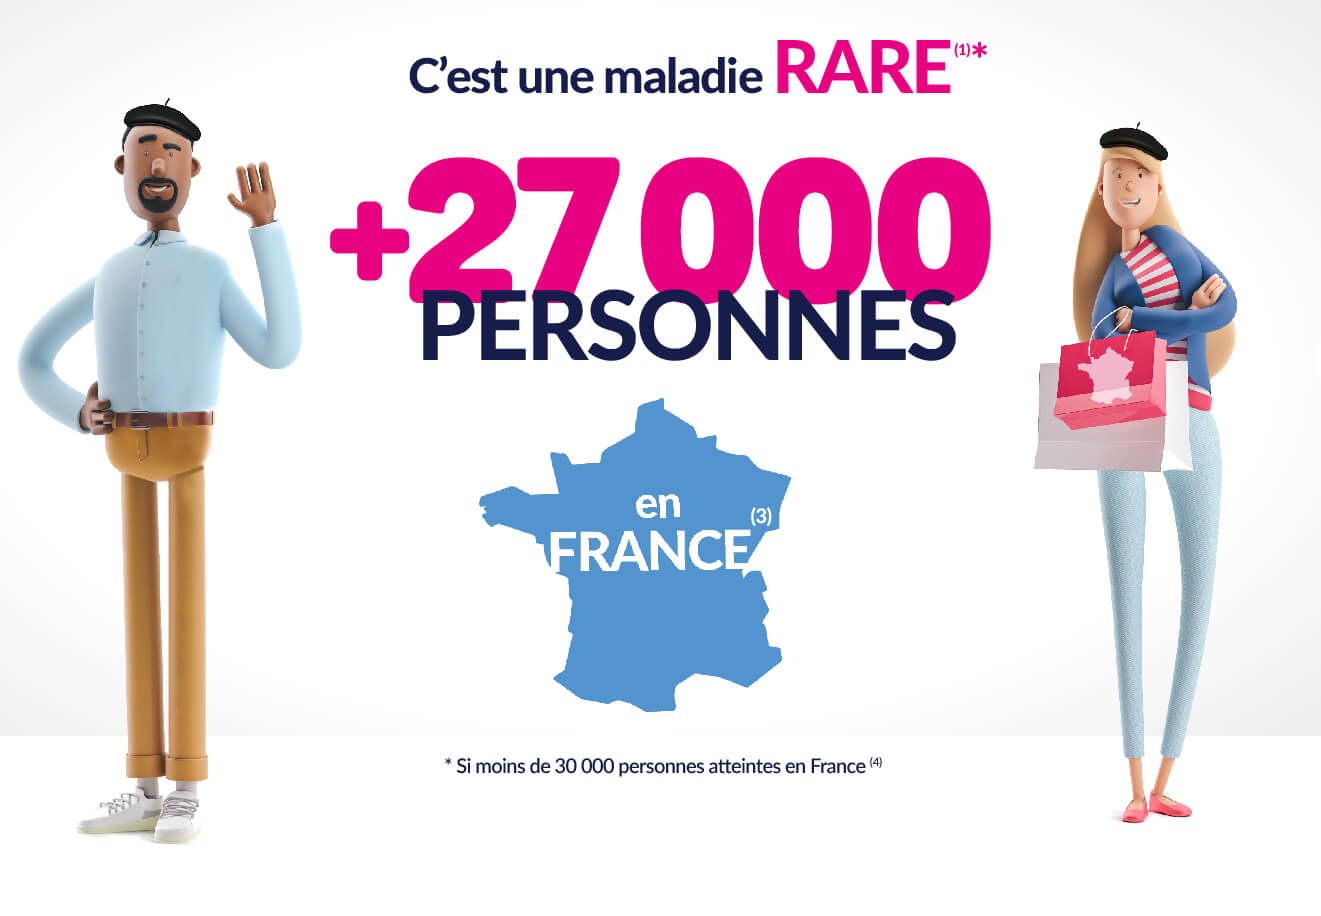 C'est une maladie rare. +27000 personnes en France.